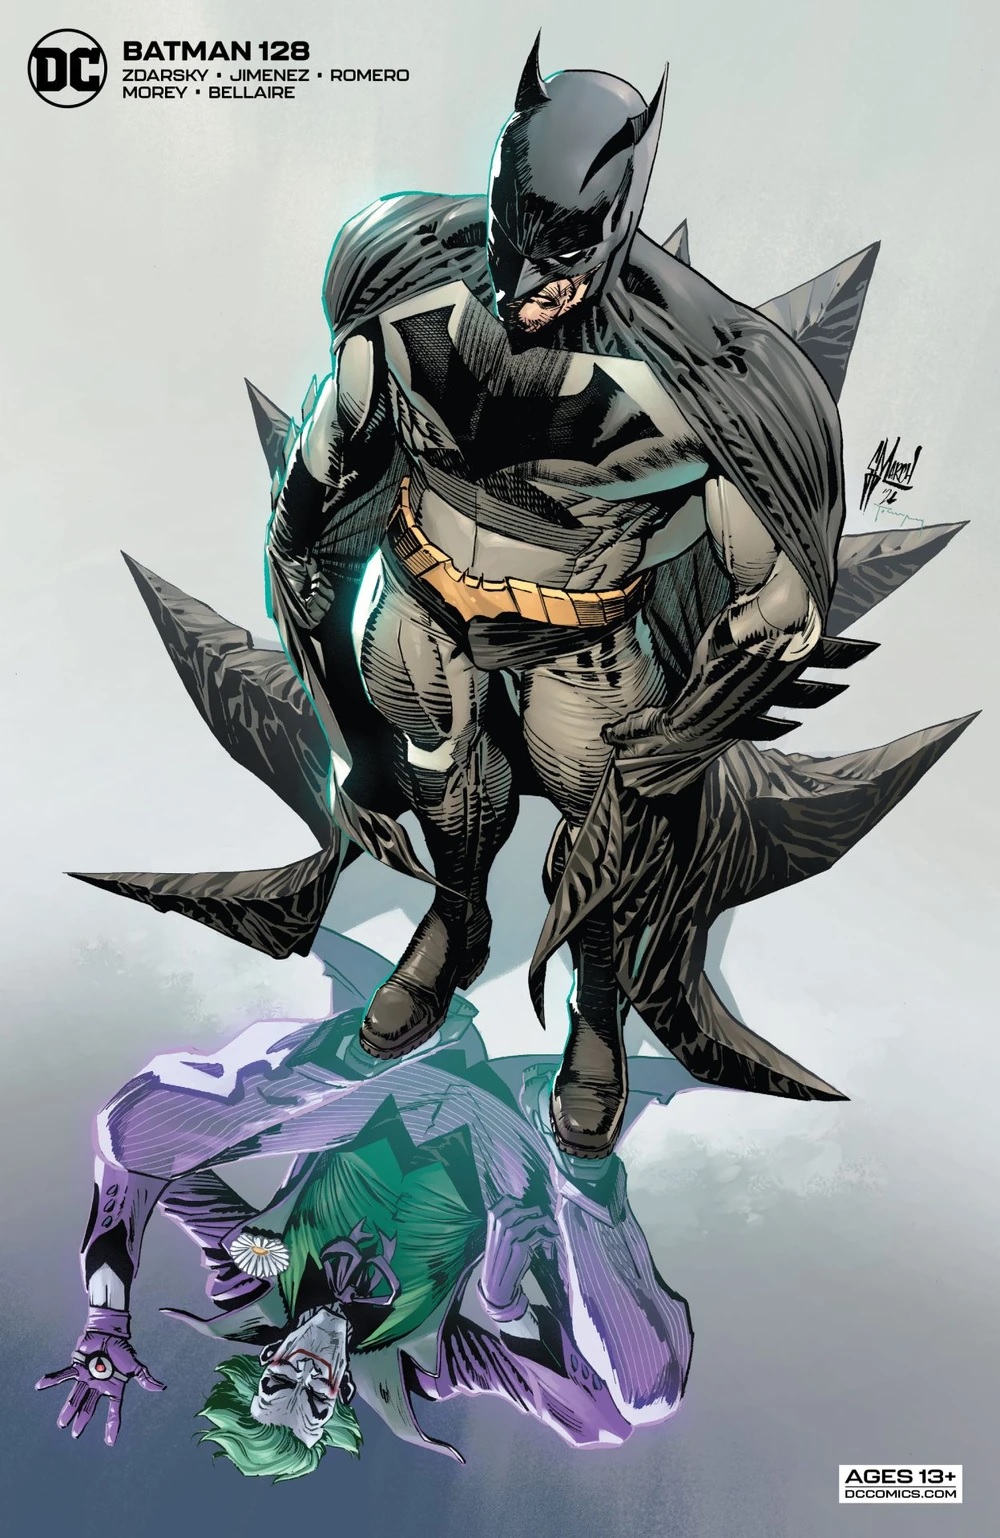 COMIC BOOK FAN AND LOVER: BATMAN: A PRUEBA DE FALLOS, PARTE 4 – DC COMICS